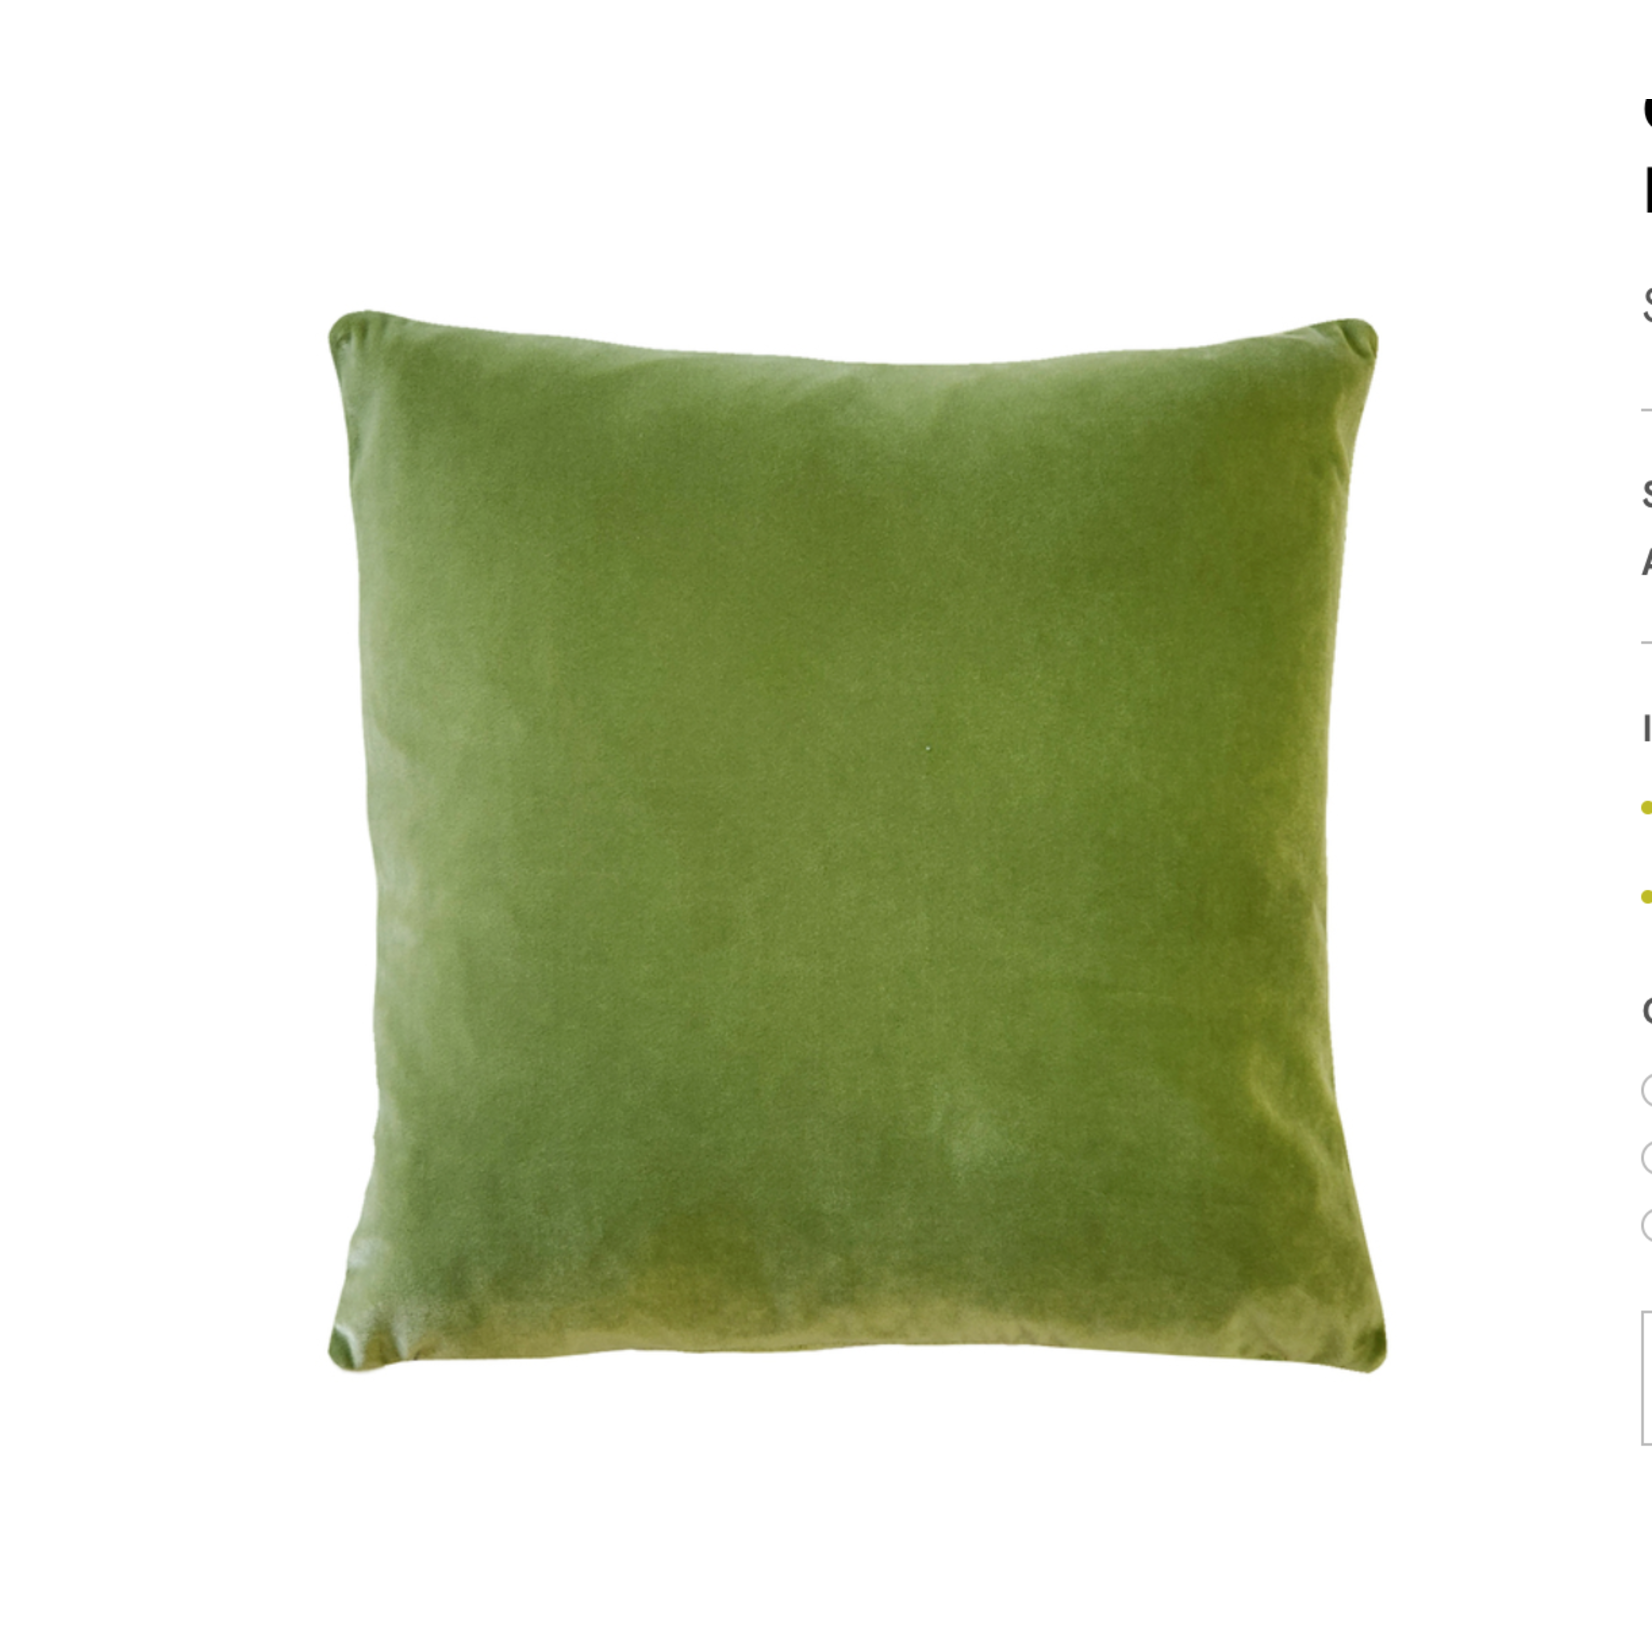 Castello Summer Green Velvet Throw Pillow 20 x 20 Cover